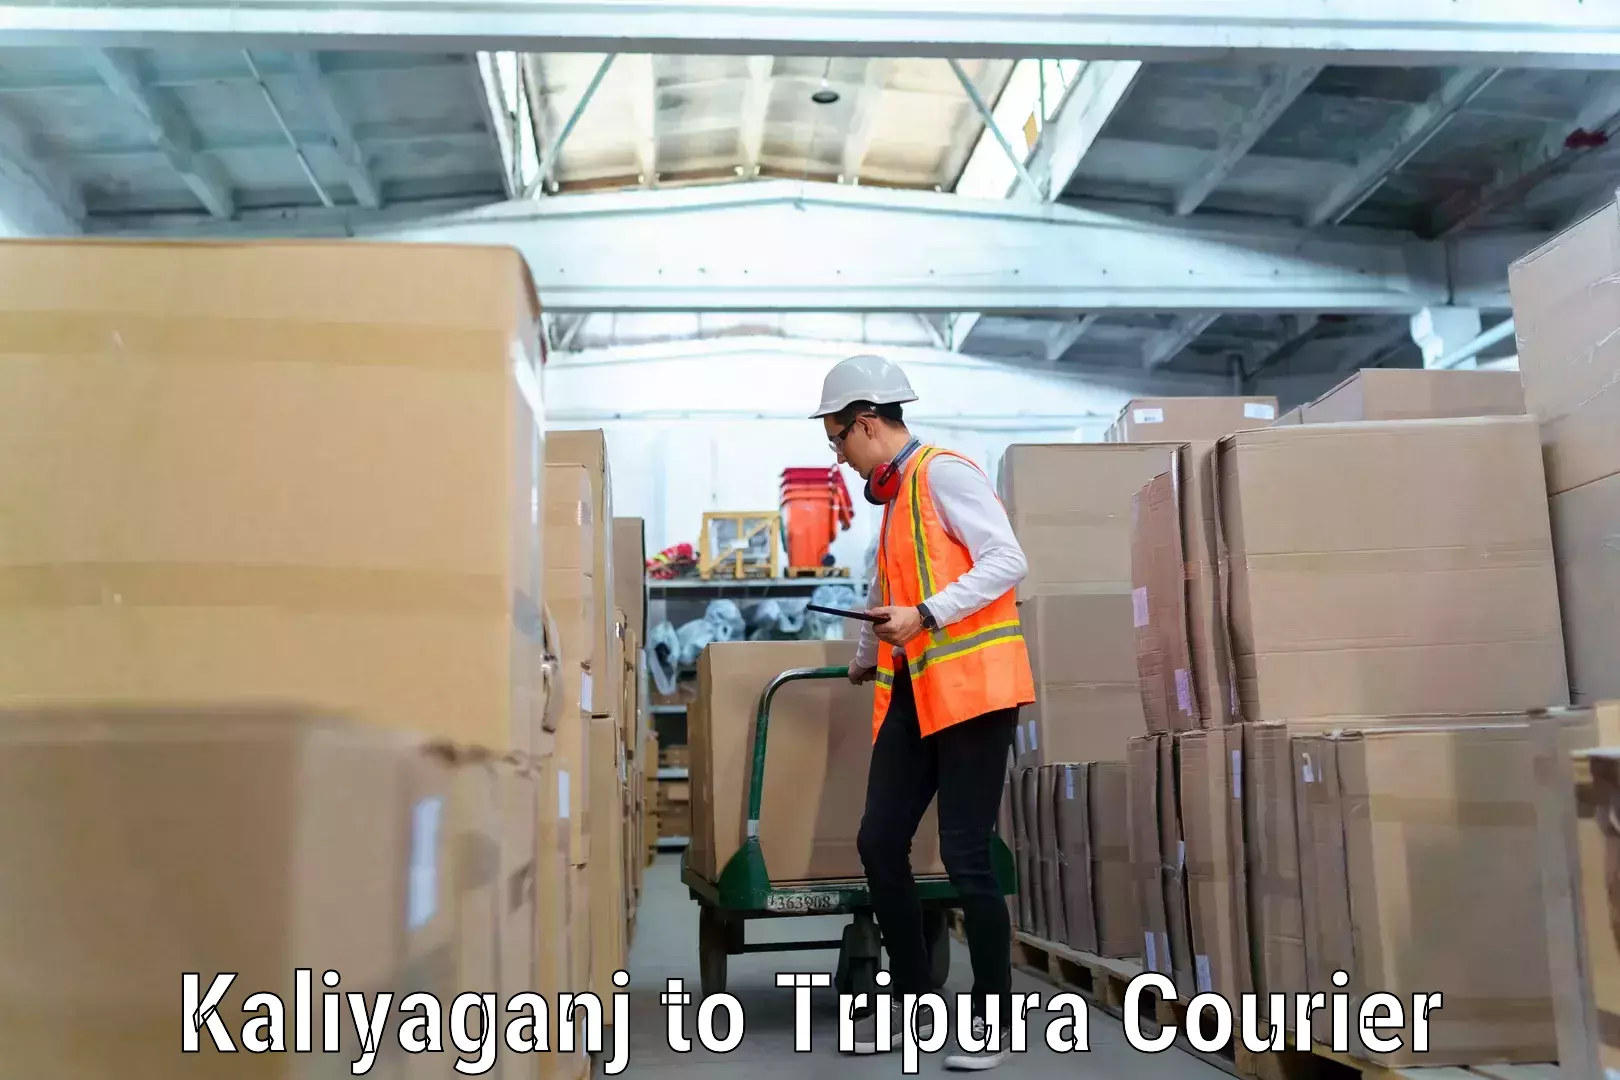 Professional furniture movers Kaliyaganj to Tripura